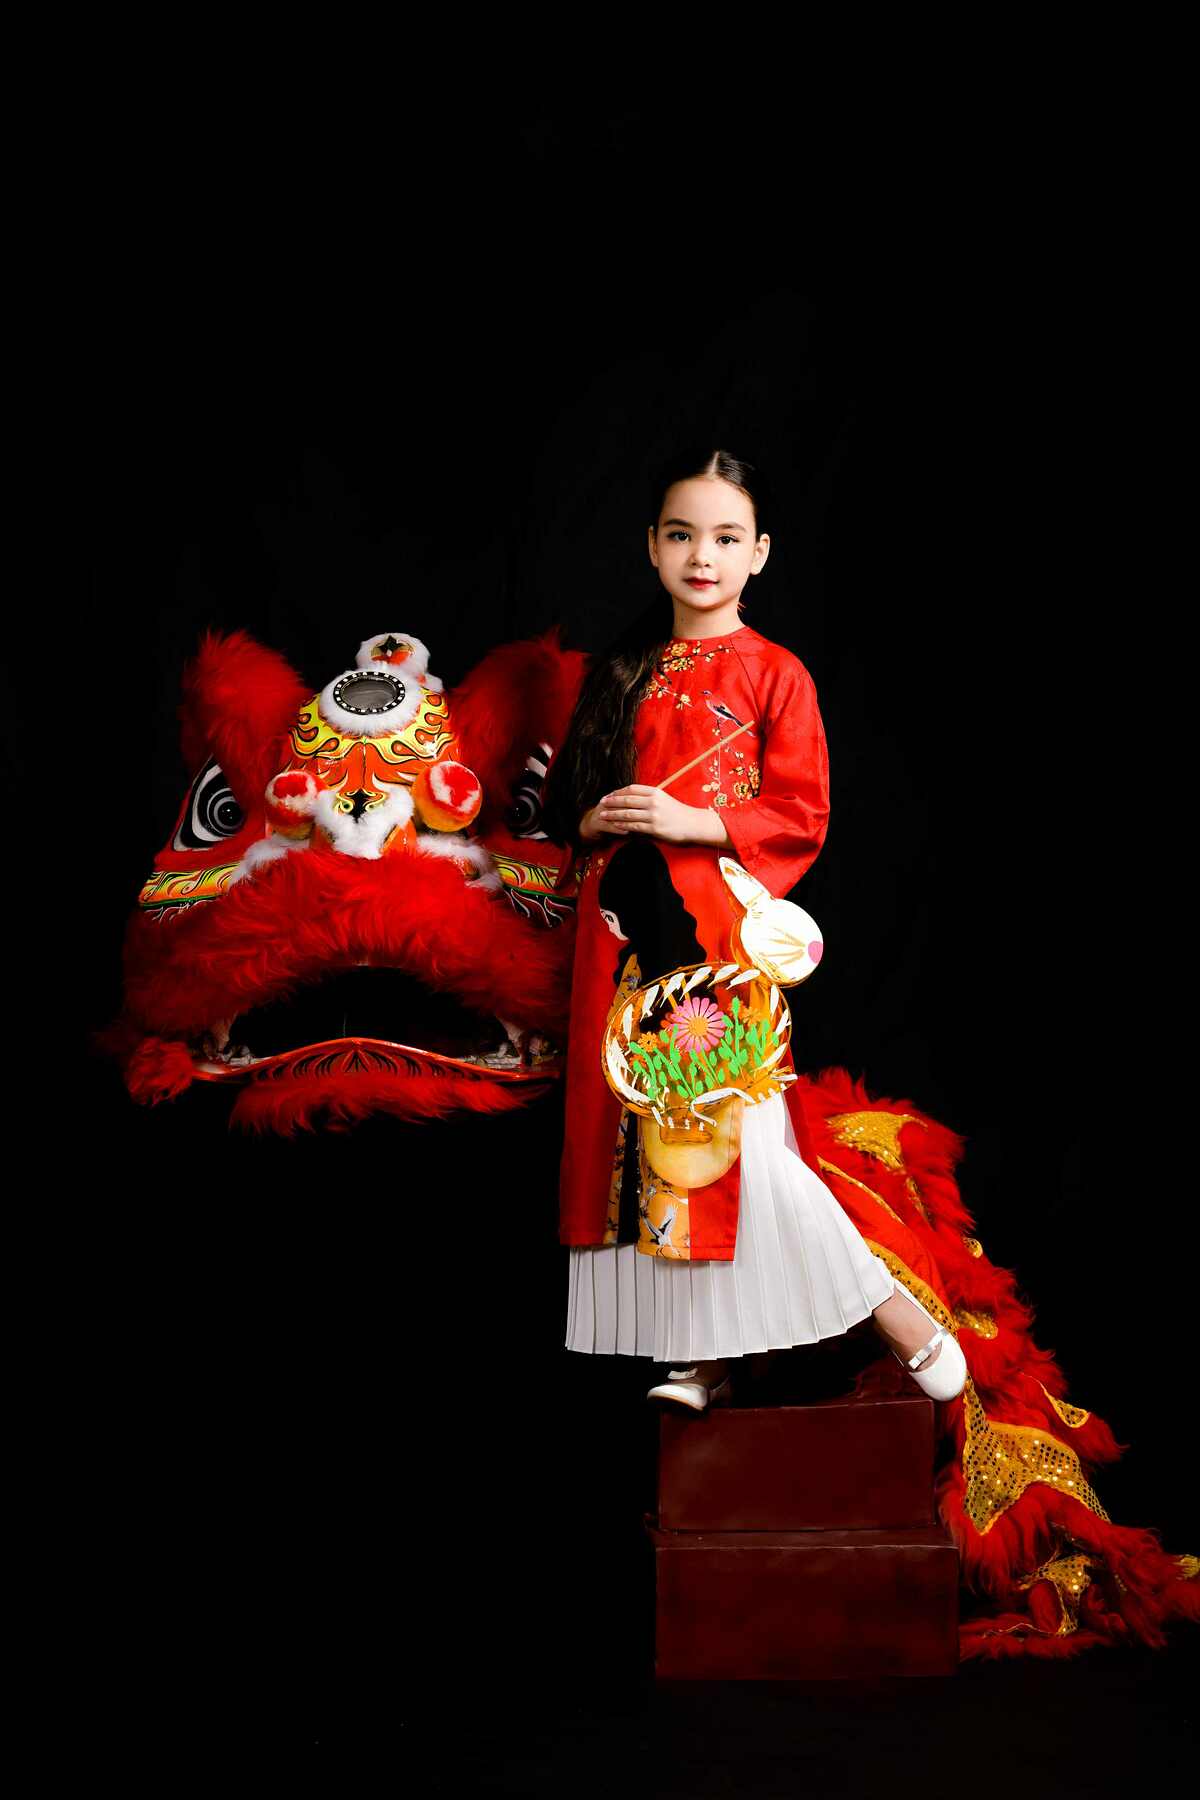  Không sở hữu gương mặt đậm chất Á Đông nhưng khi diện chiếc áo dài, cô học trò cưng của Xuân Lan vẫn thể hiện được sự e ấp và duyên dáng của những cô gái Việt trong trang phục truyền thông.